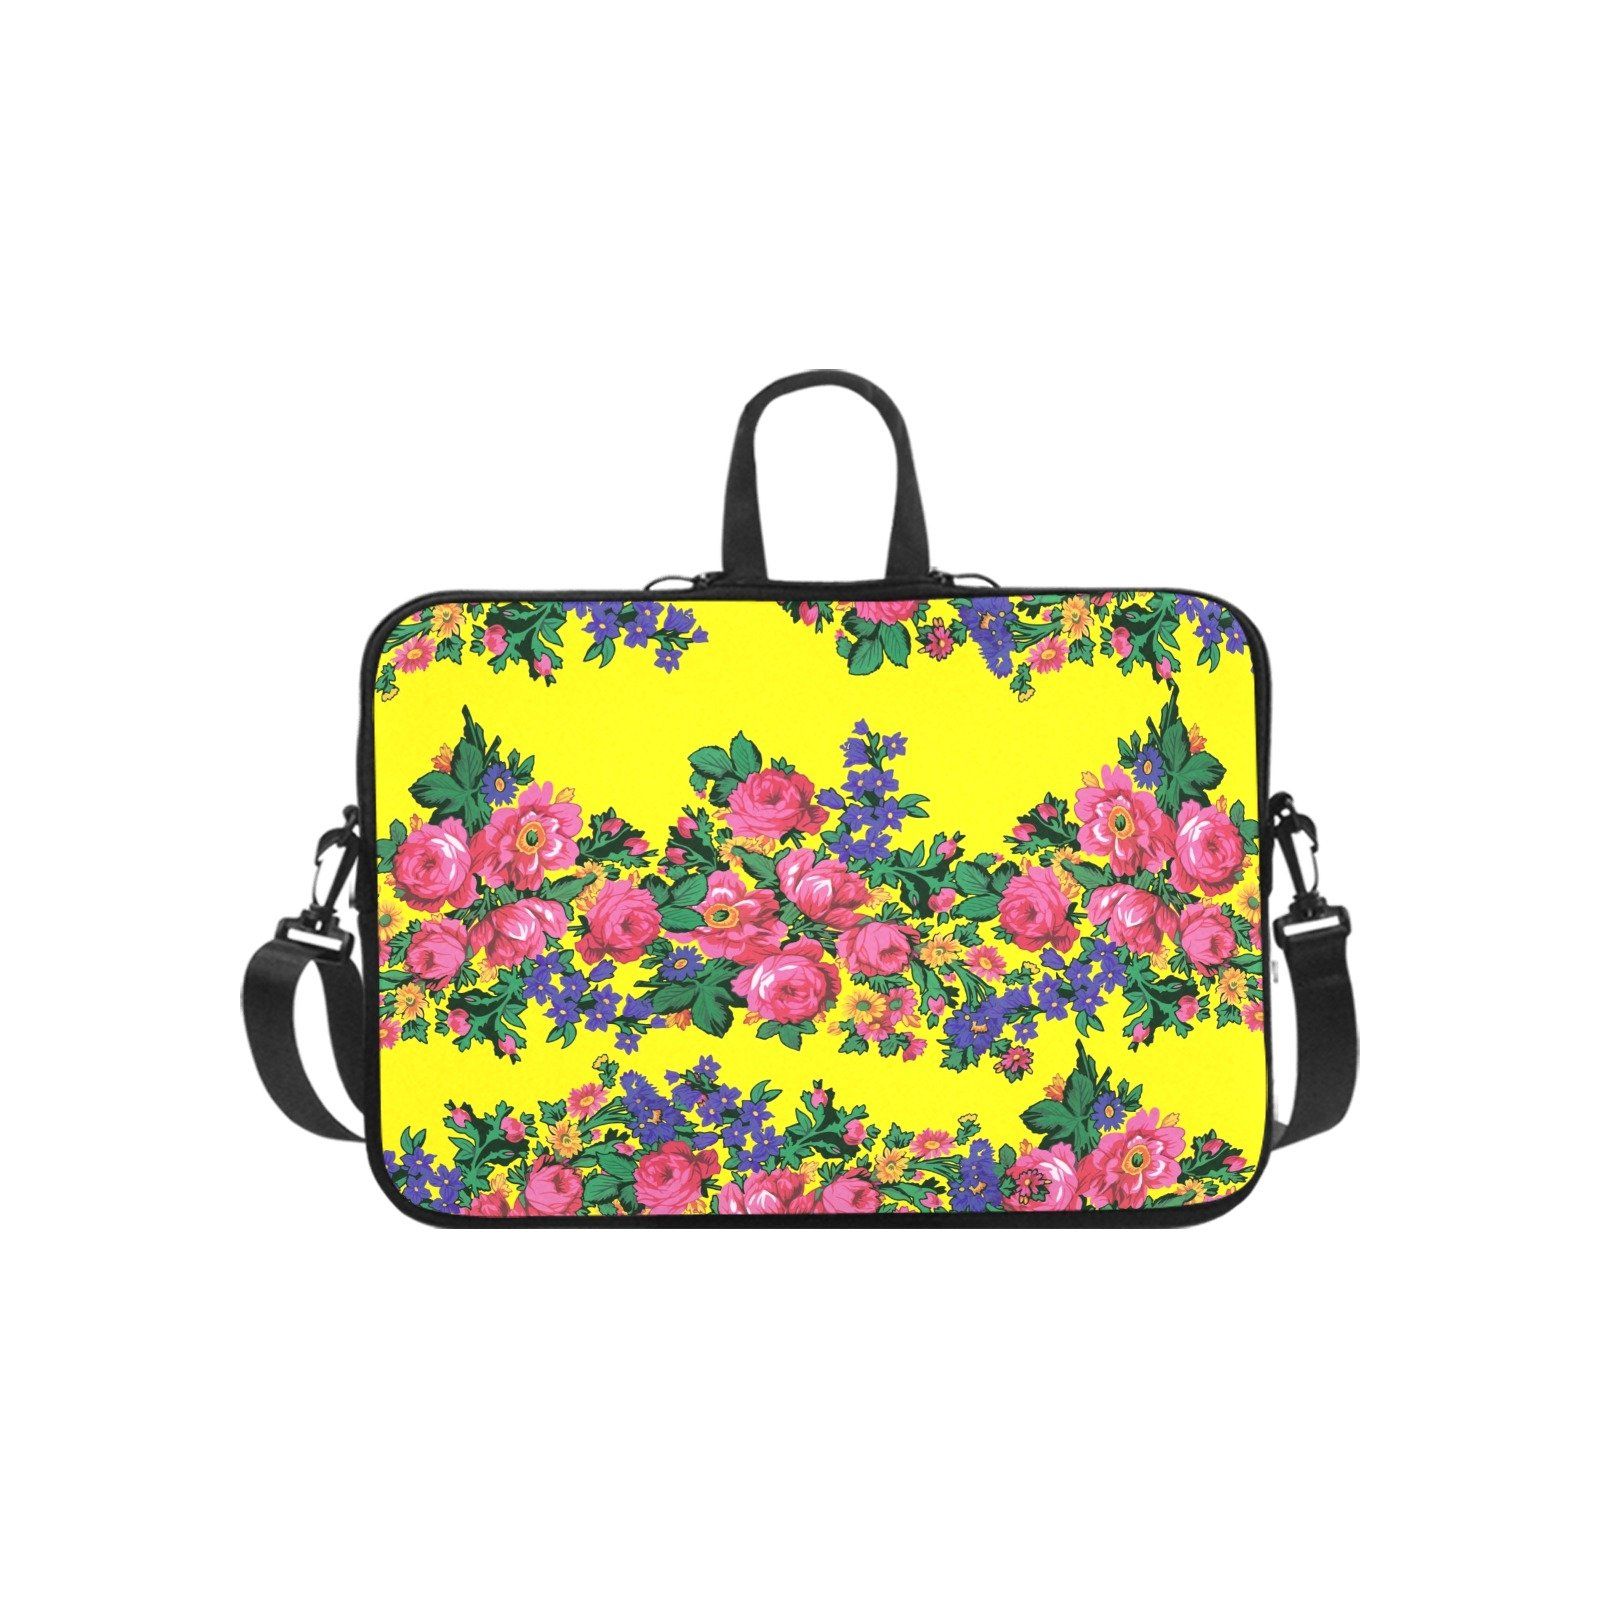 Kokum's Revenge Yellow Laptop Handbags 17" bag e-joyer 